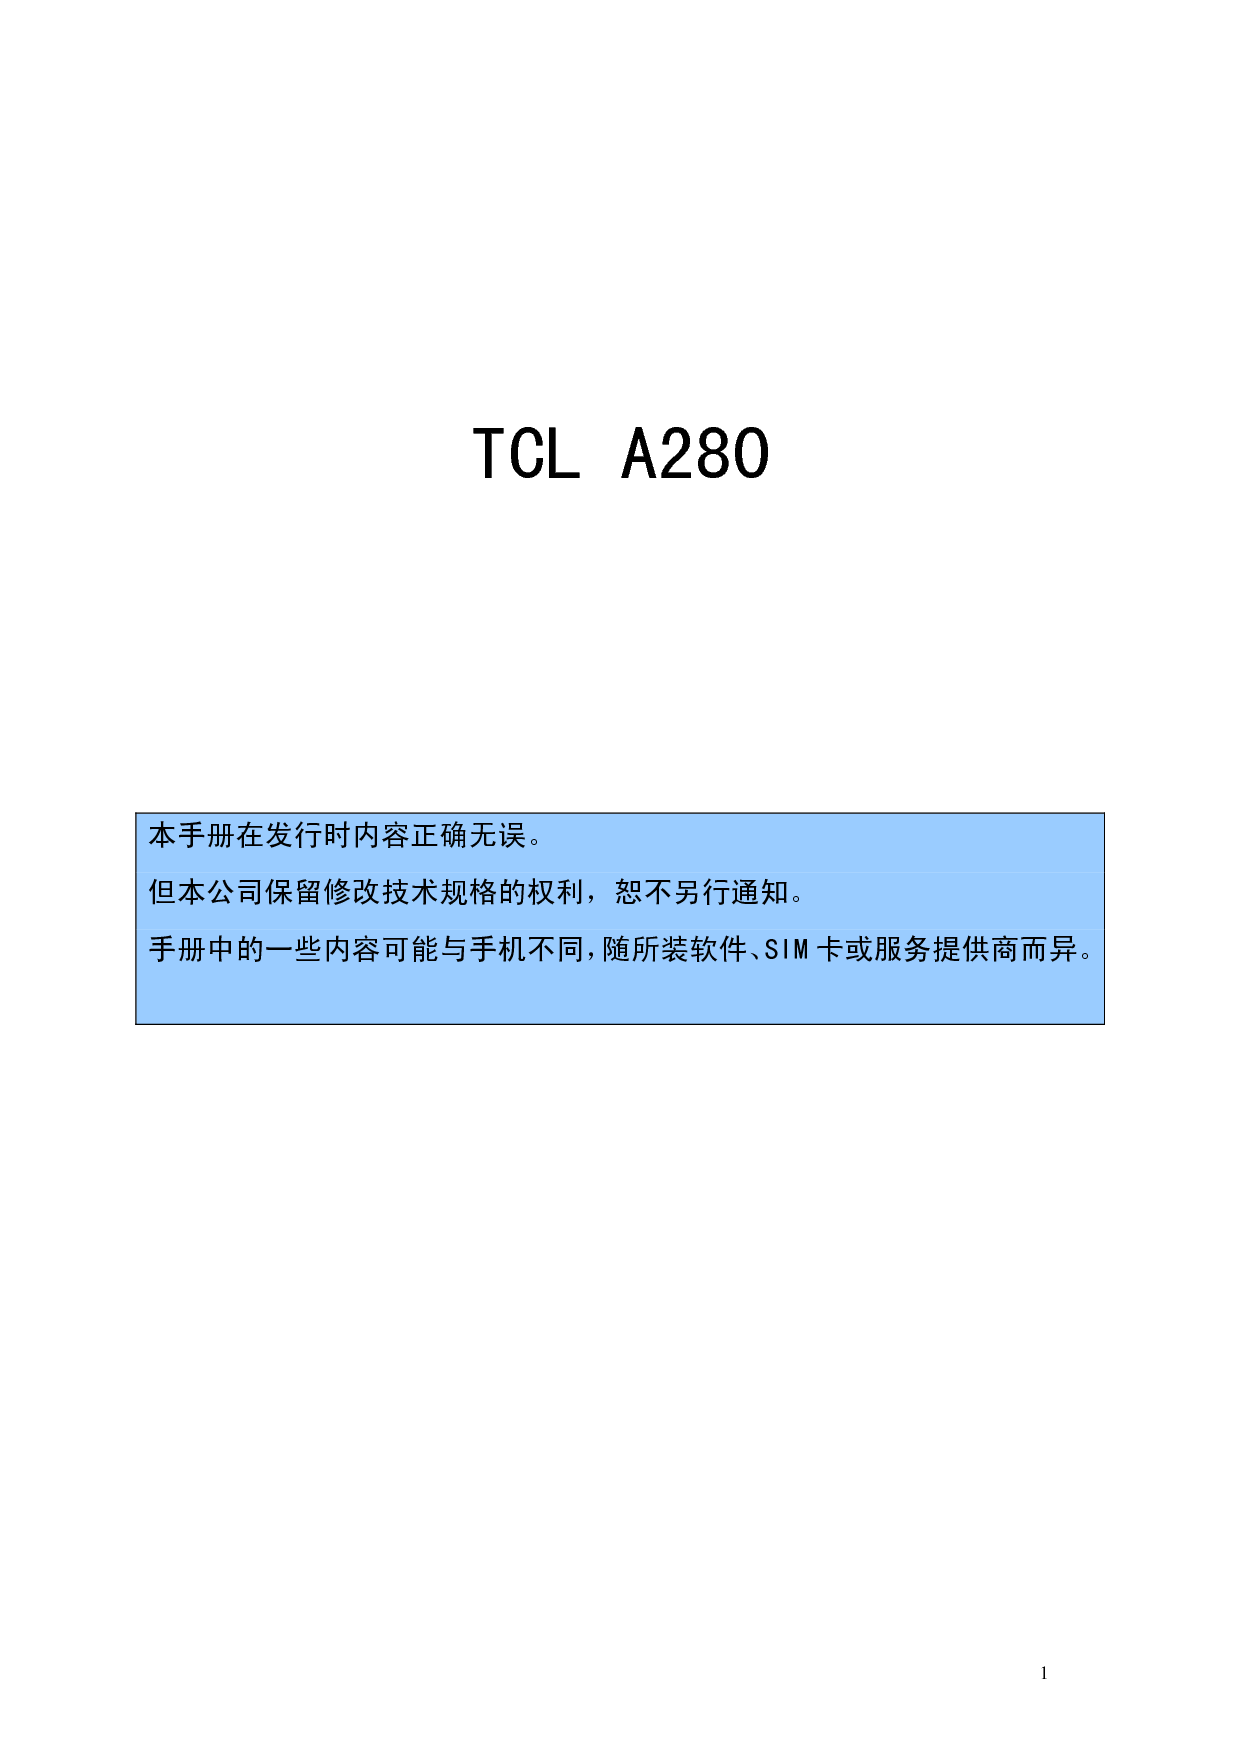 TCL A280 用户手册 封面